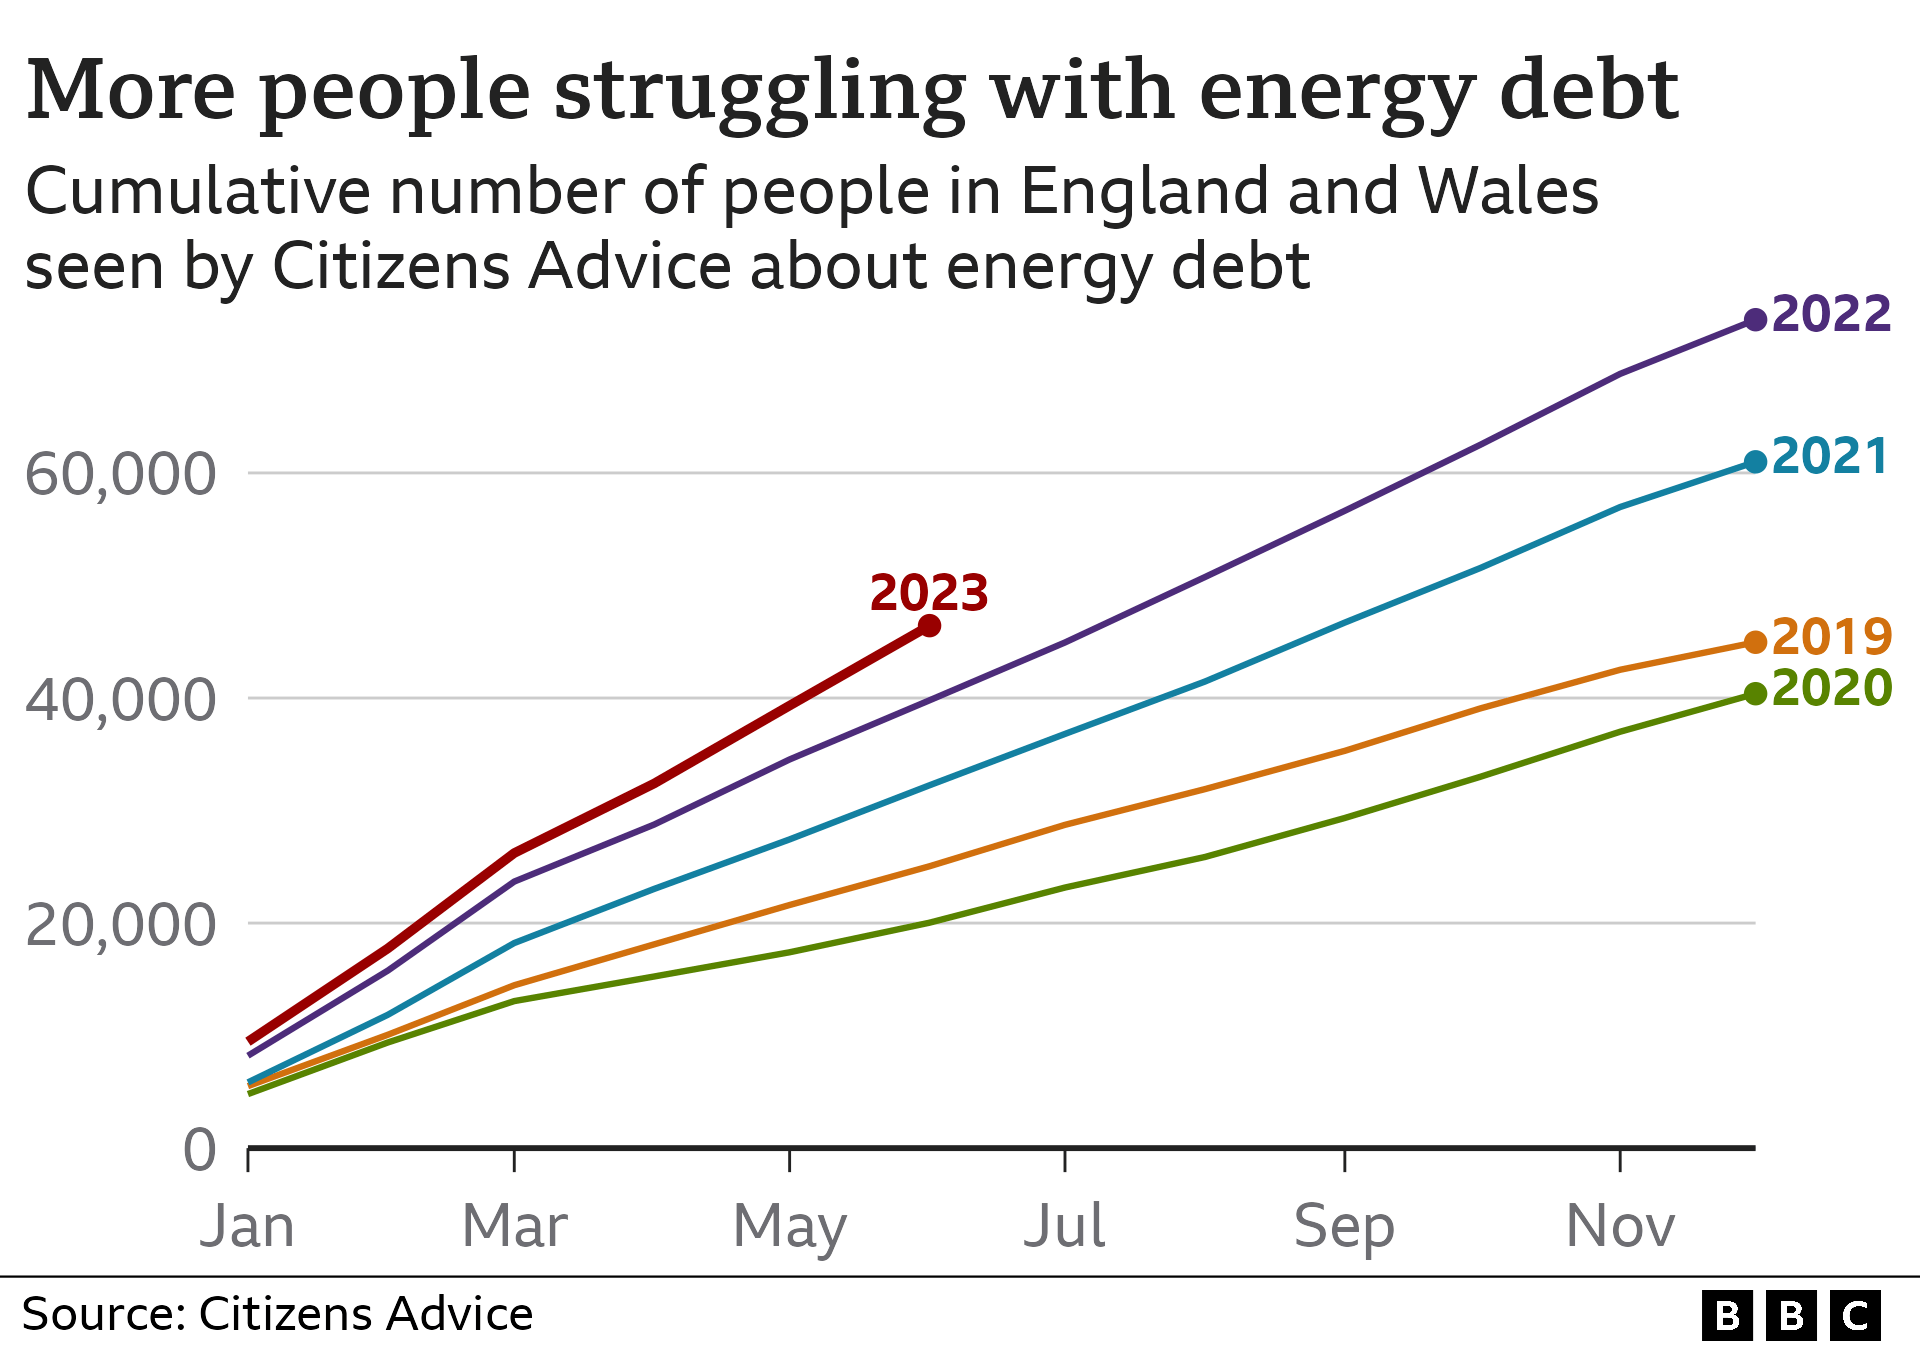 Линейная диаграмма, показывающая совокупное количество жителей Англии и Уэльса, с которыми обращалась служба Citizens Advice по поводу энергетического долга. В 2023 году к июню в Citizens Advice обратился 46 431 человек, что больше, чем в любой другой год, по крайней мере, с 2019 года.